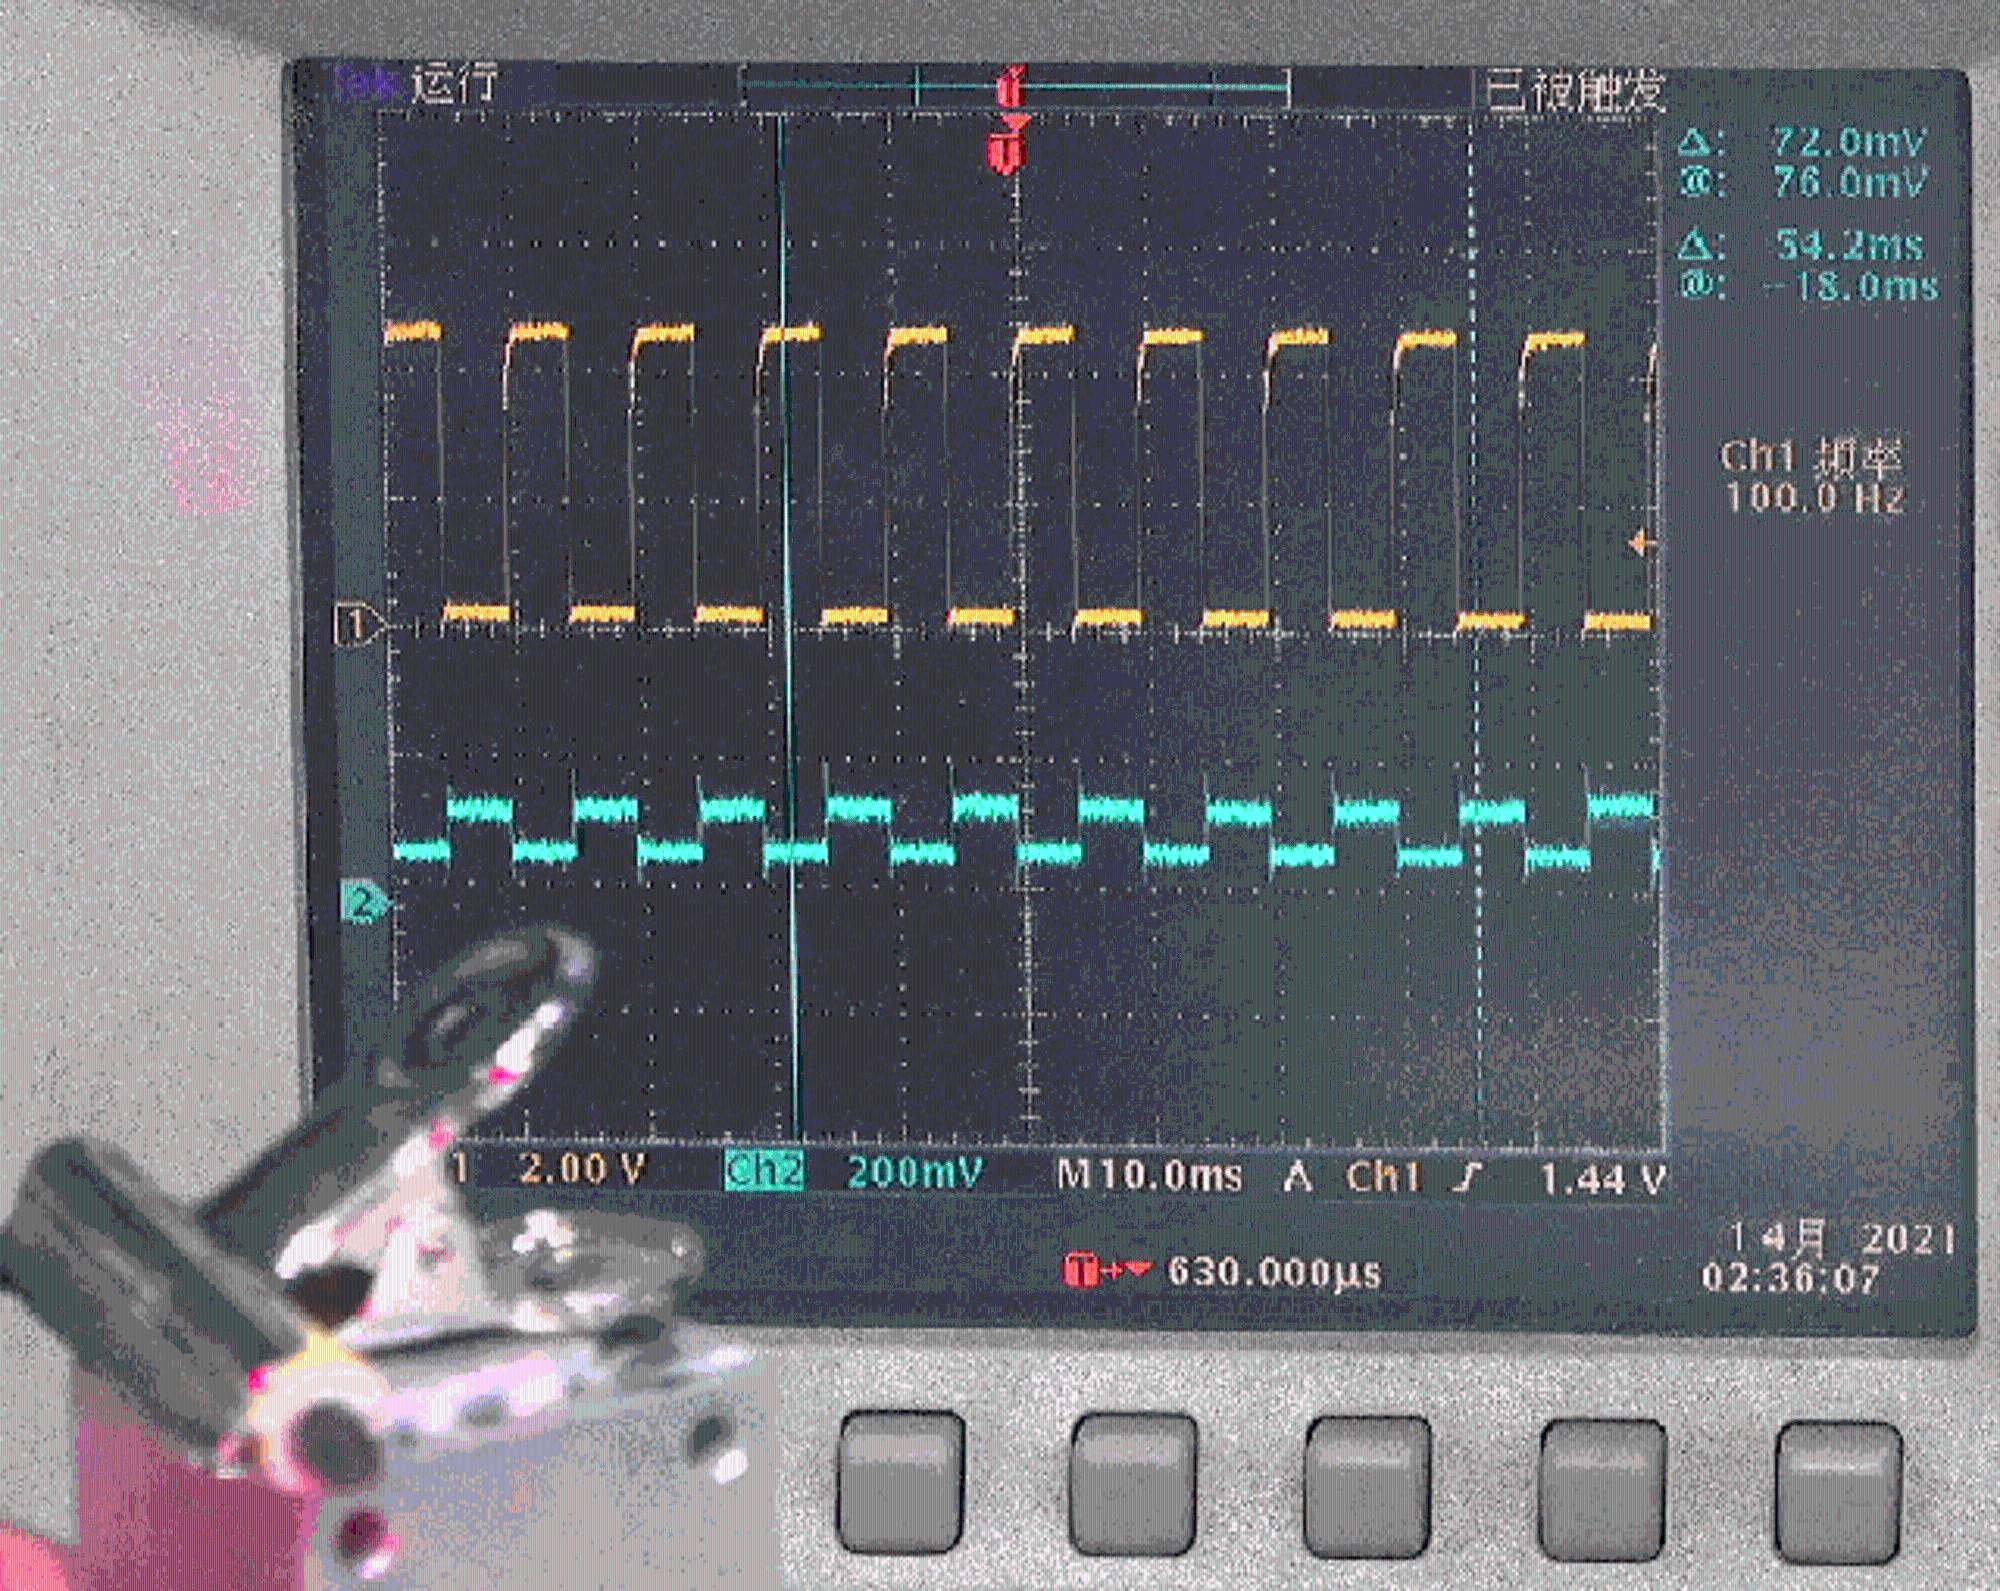 ▲ 激光管工作电压型号（黄色）与光电管检测电压信号（青色）